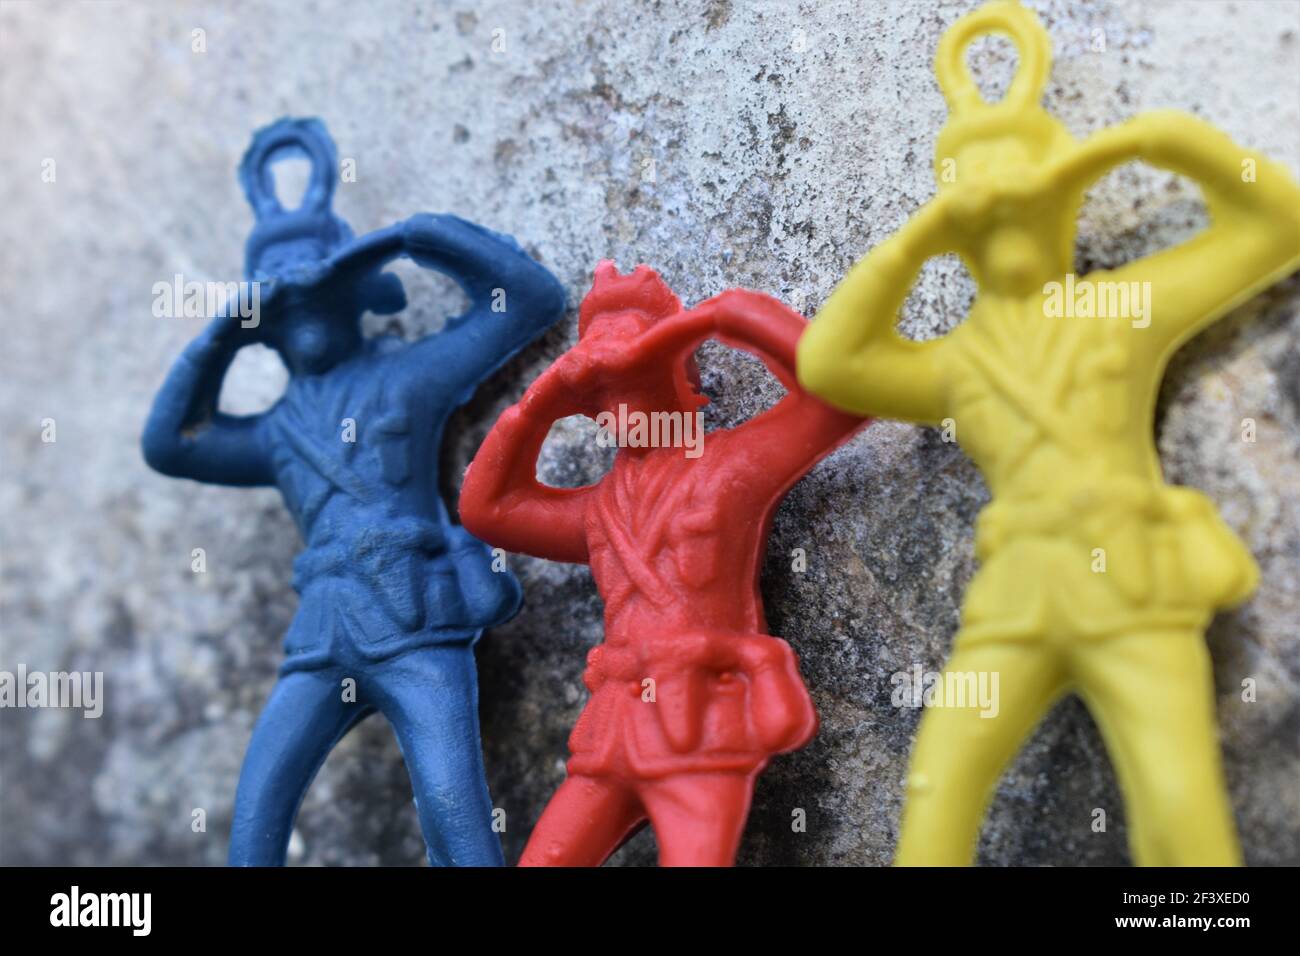 Un groupe de soldats de jouet en plastique coloré. Soldat de jouet. Banque D'Images